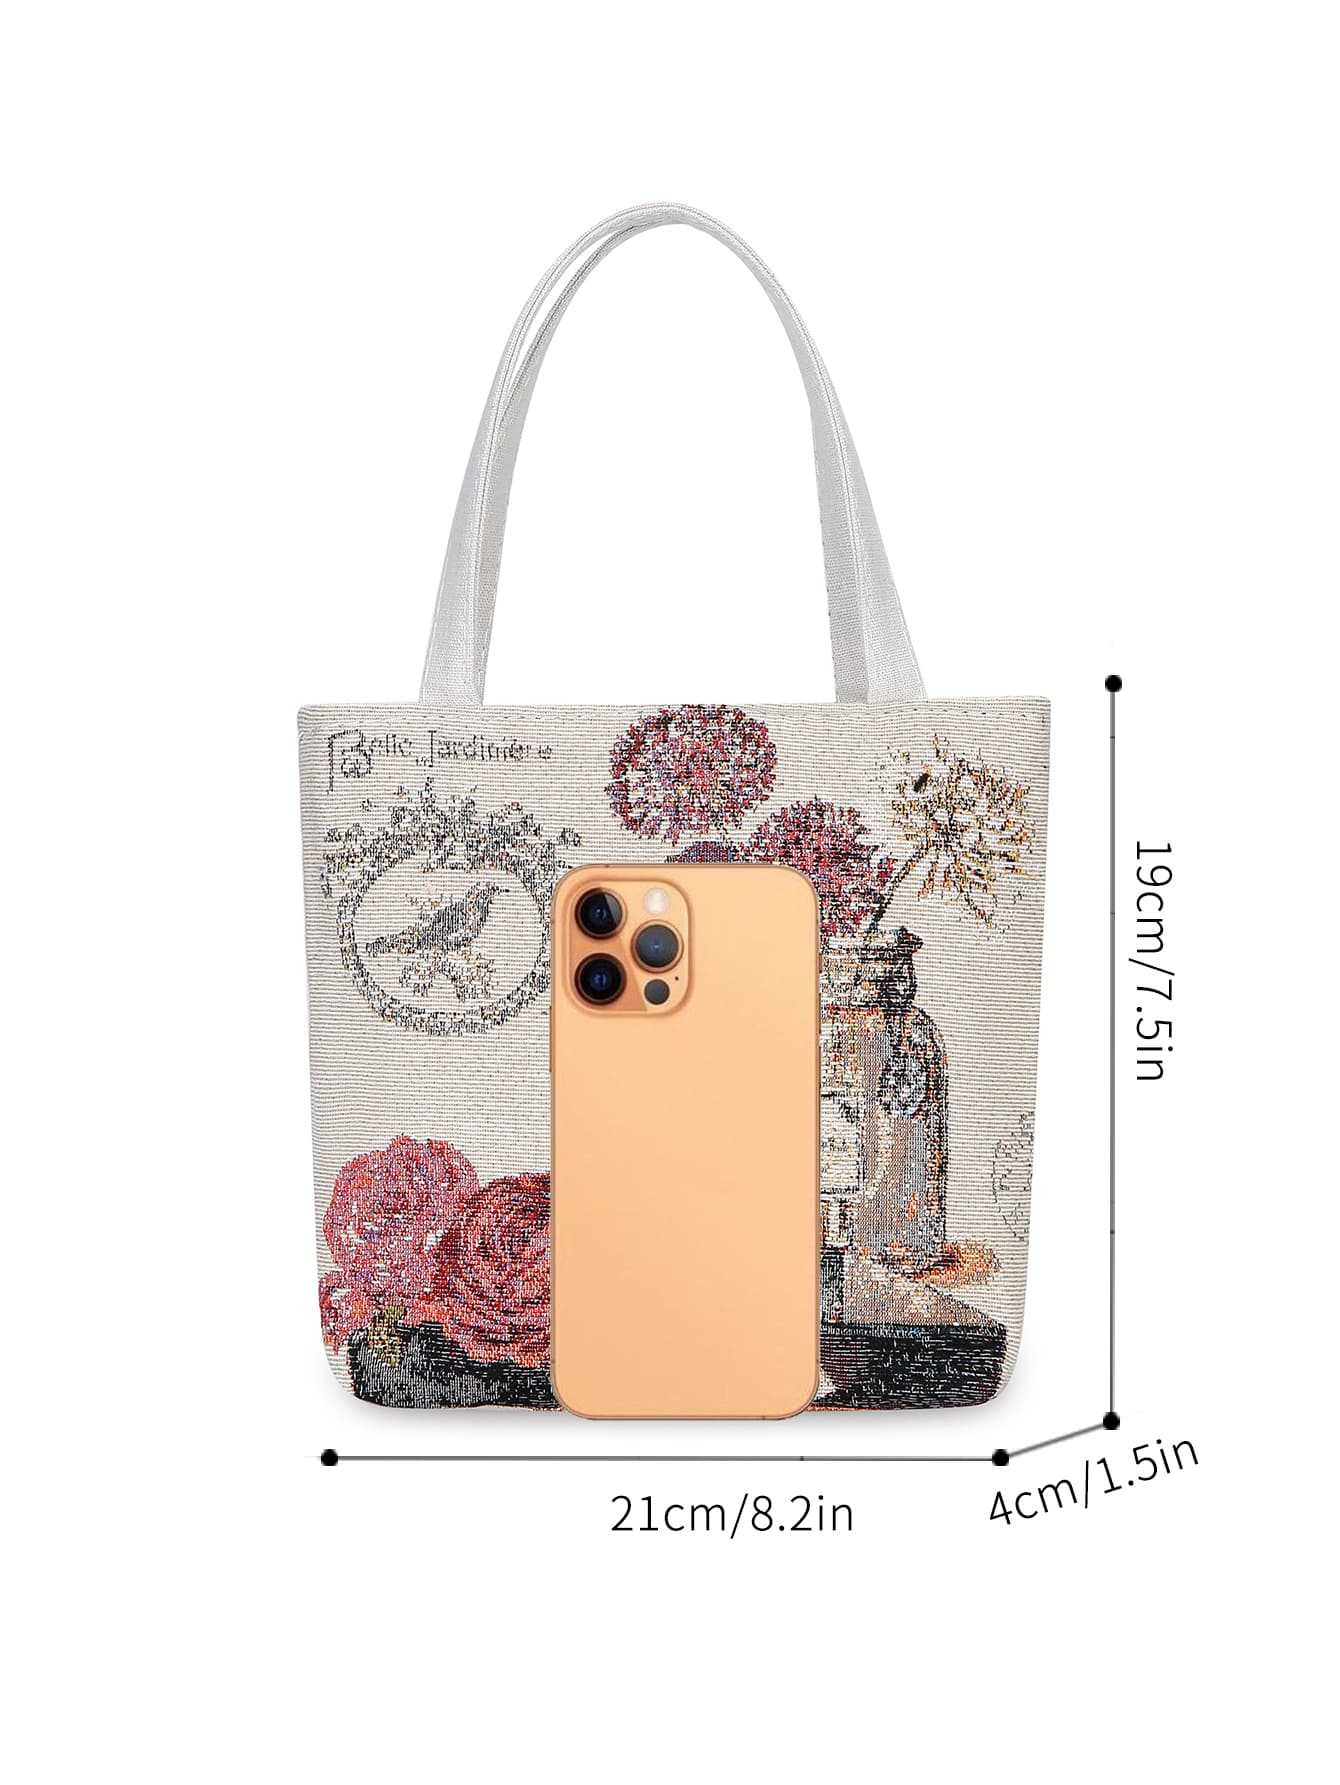 Квадратная сумка с рисунком бабочки Маленькая сумка через плечо с двойной ручкой, многоцветный цена и фото